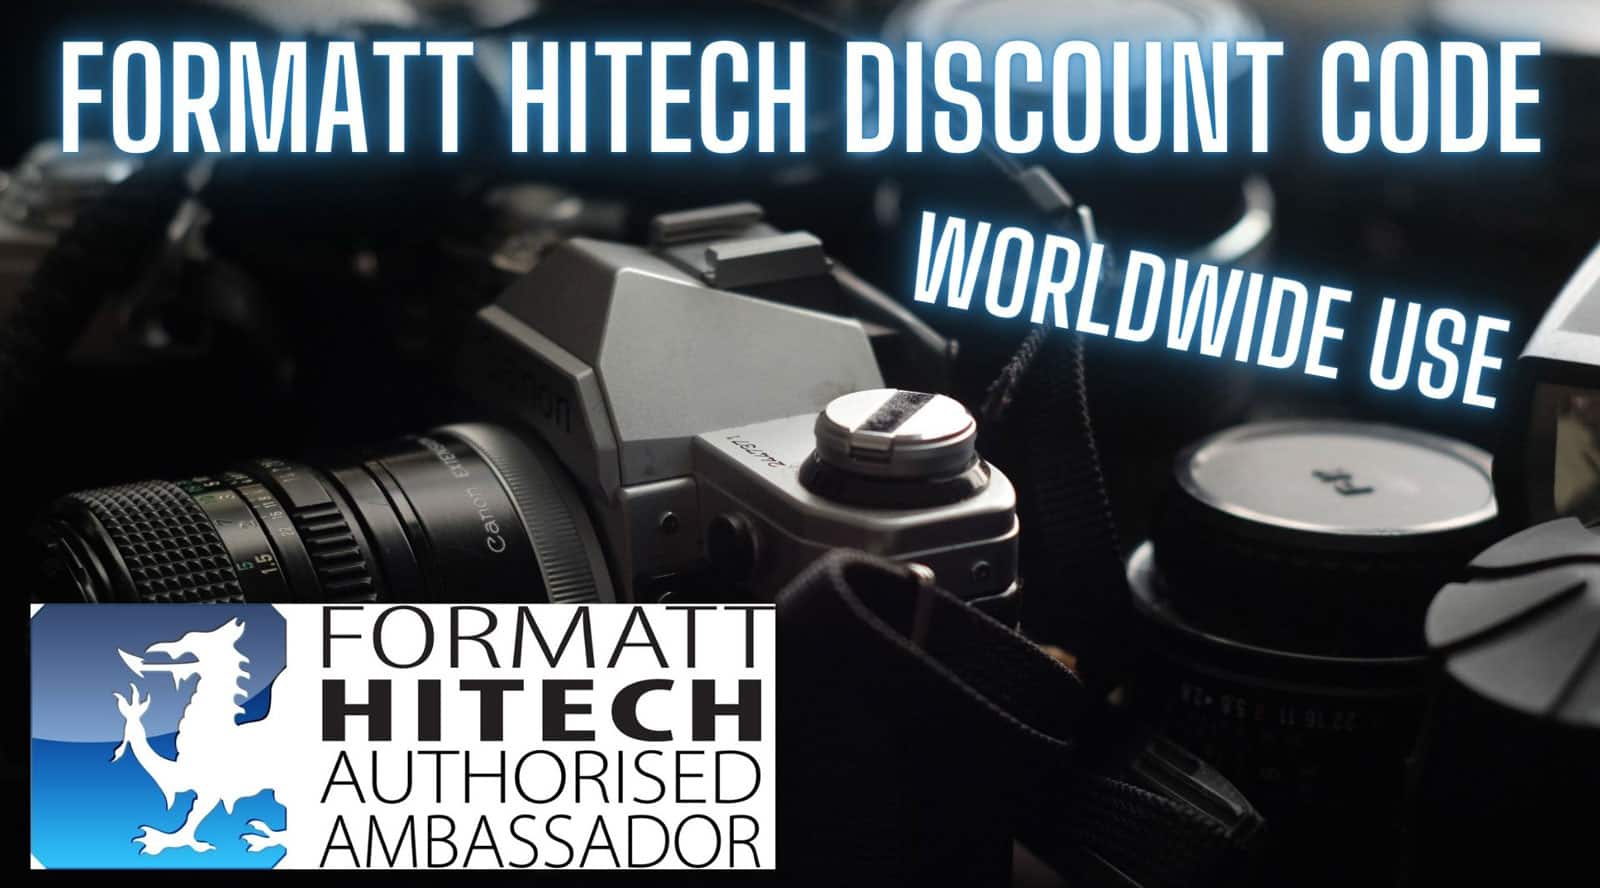 Formatt Hitech Discount Code UK image